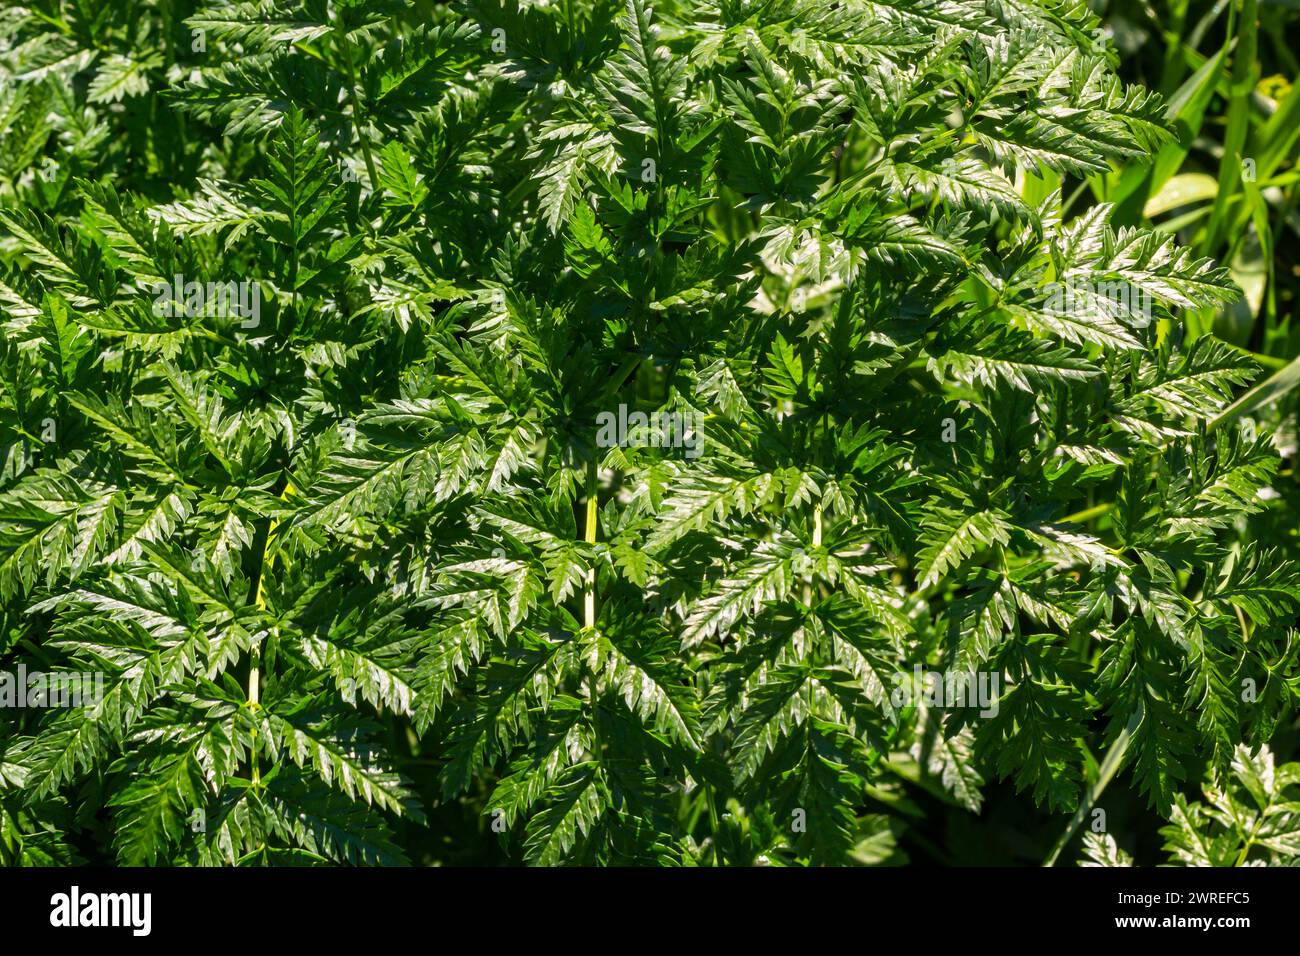 Grüne Blätter einer giftigen Pflanze Conium maculatum Hemlock Nahaufnahme. Das Konzept der Textur von natürlichen Mustern, Ornamenten. Stockfoto